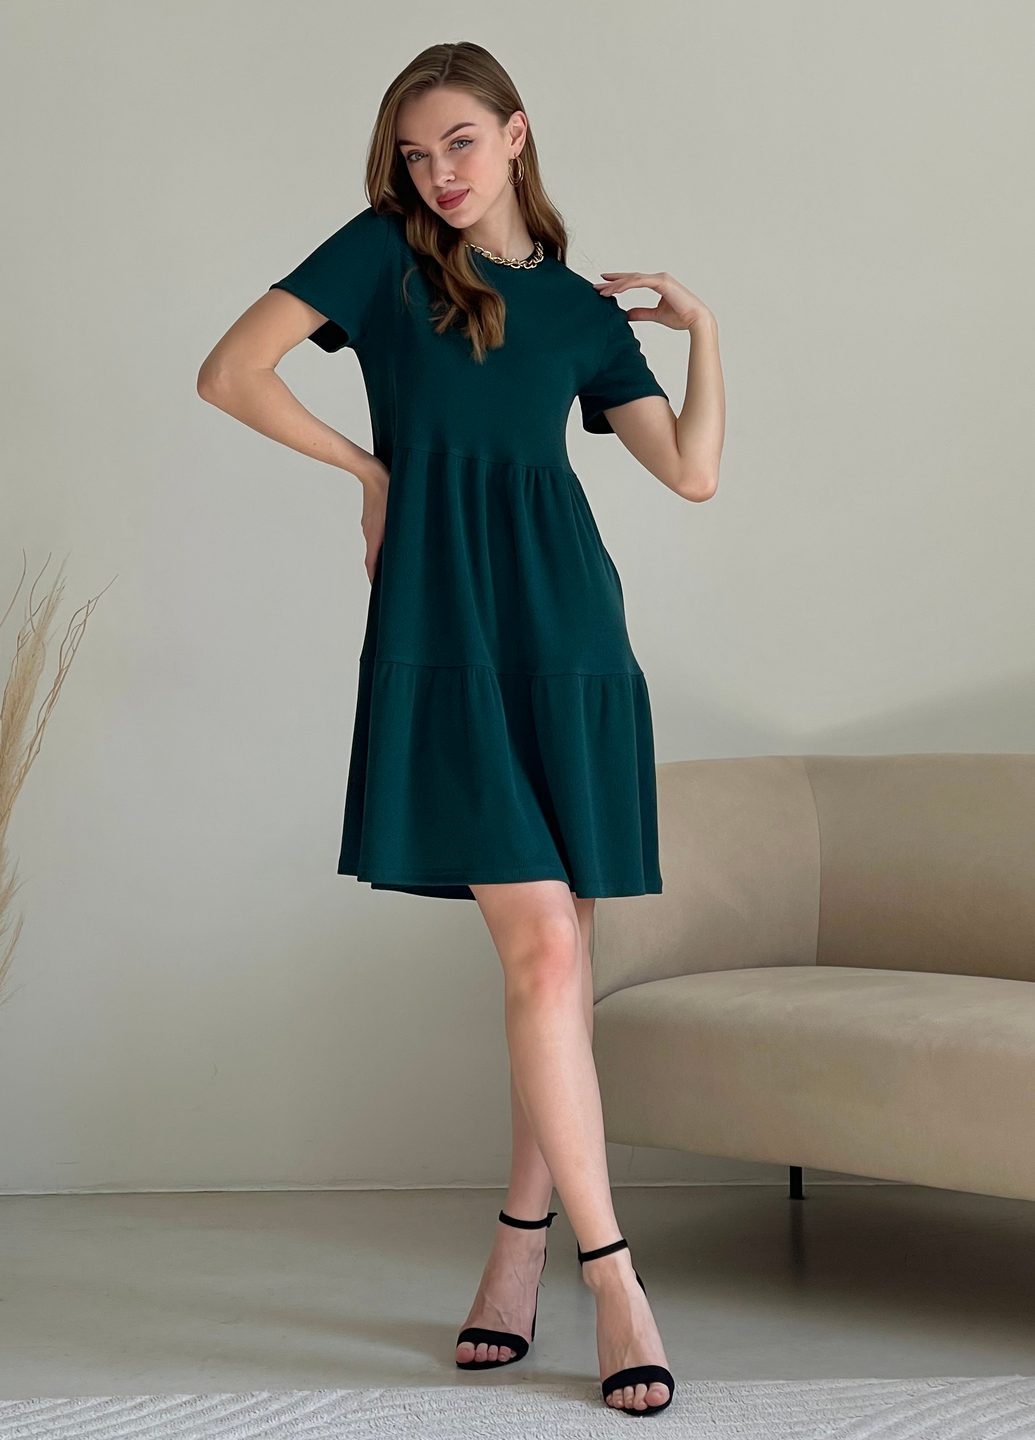 Купить Свободное платье трапеция миди зеленое Merlini Маркони 700001232 размер 42-44 (S-M) в интернет-магазине